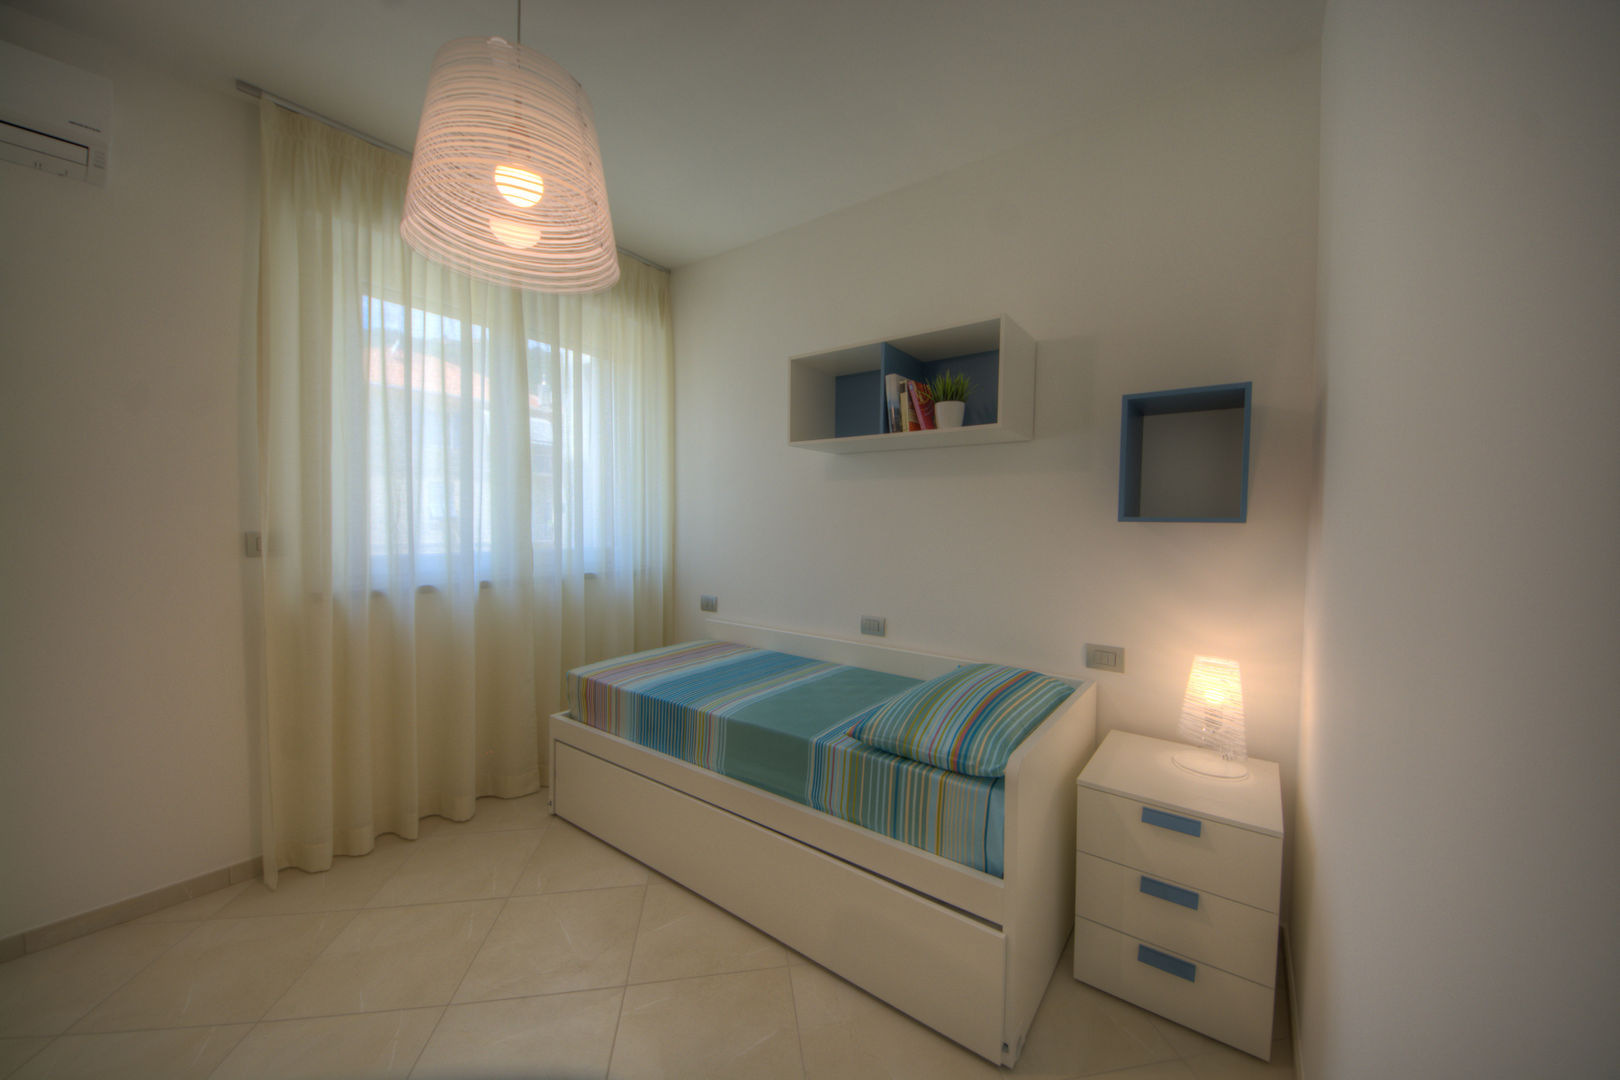 Appartamenti per locazione, Lella Badano Homestager Lella Badano Homestager Modern style bedroom Beds & headboards